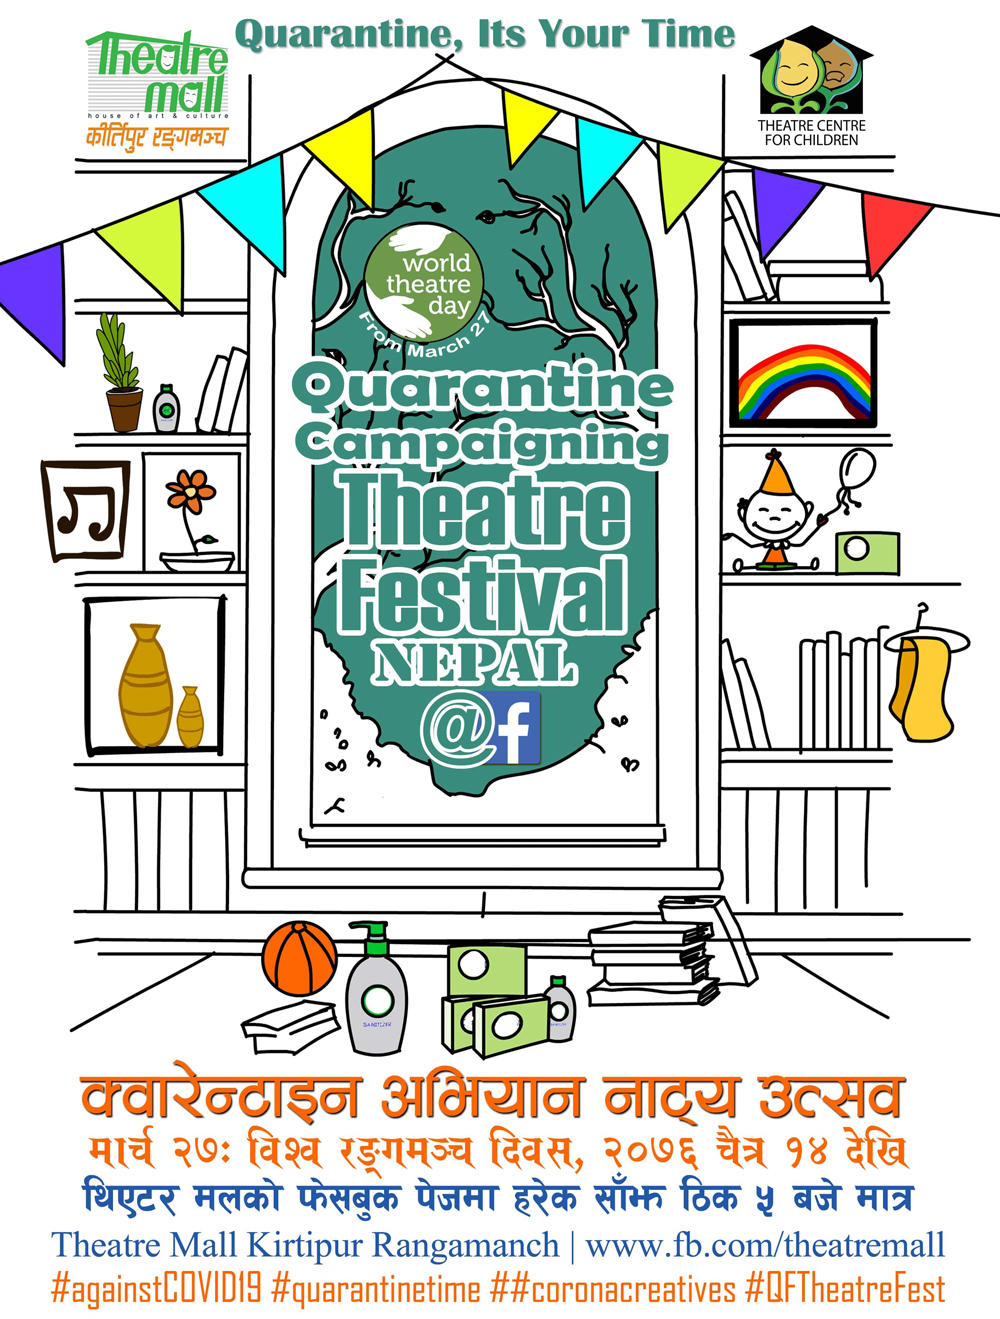 <p>Quarantine Campaigning Theatre Festival<br></p>